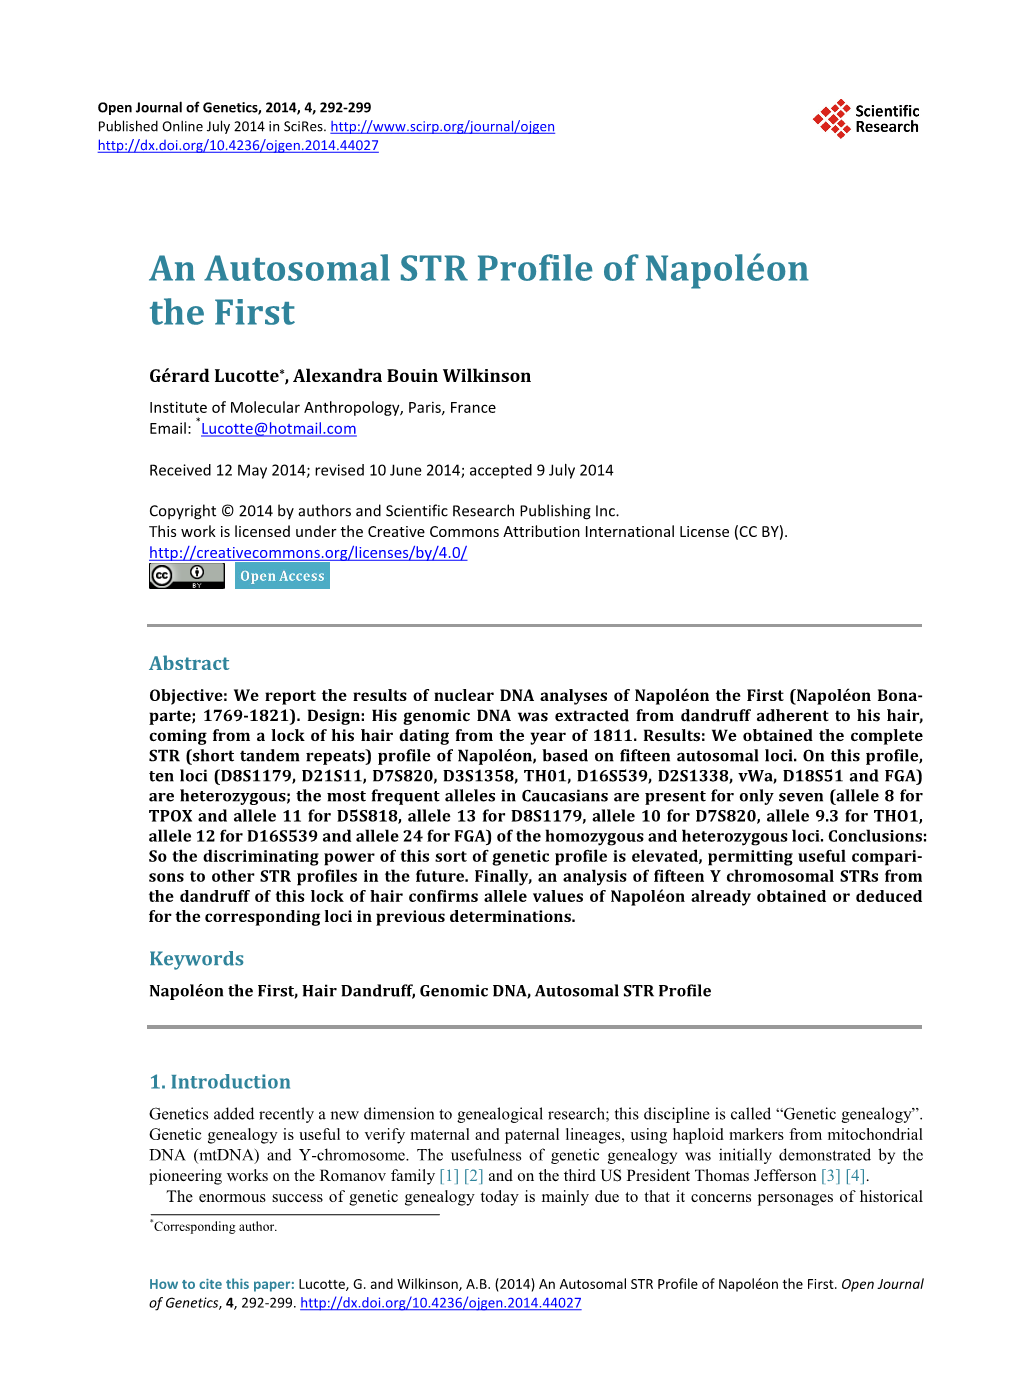 An Autosomal STR Profile of Napoléon the First